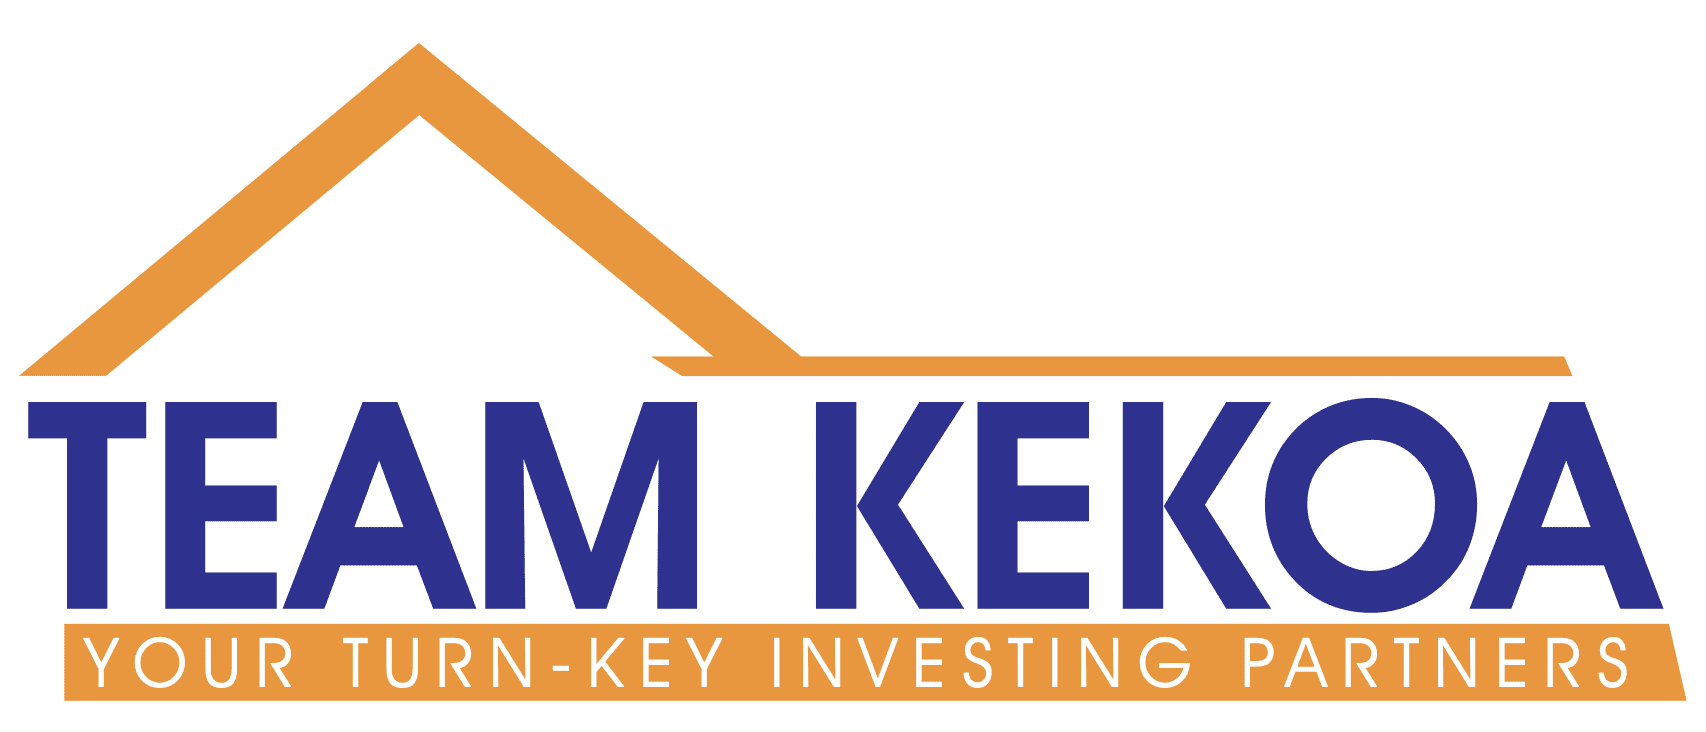 team kekoa logo